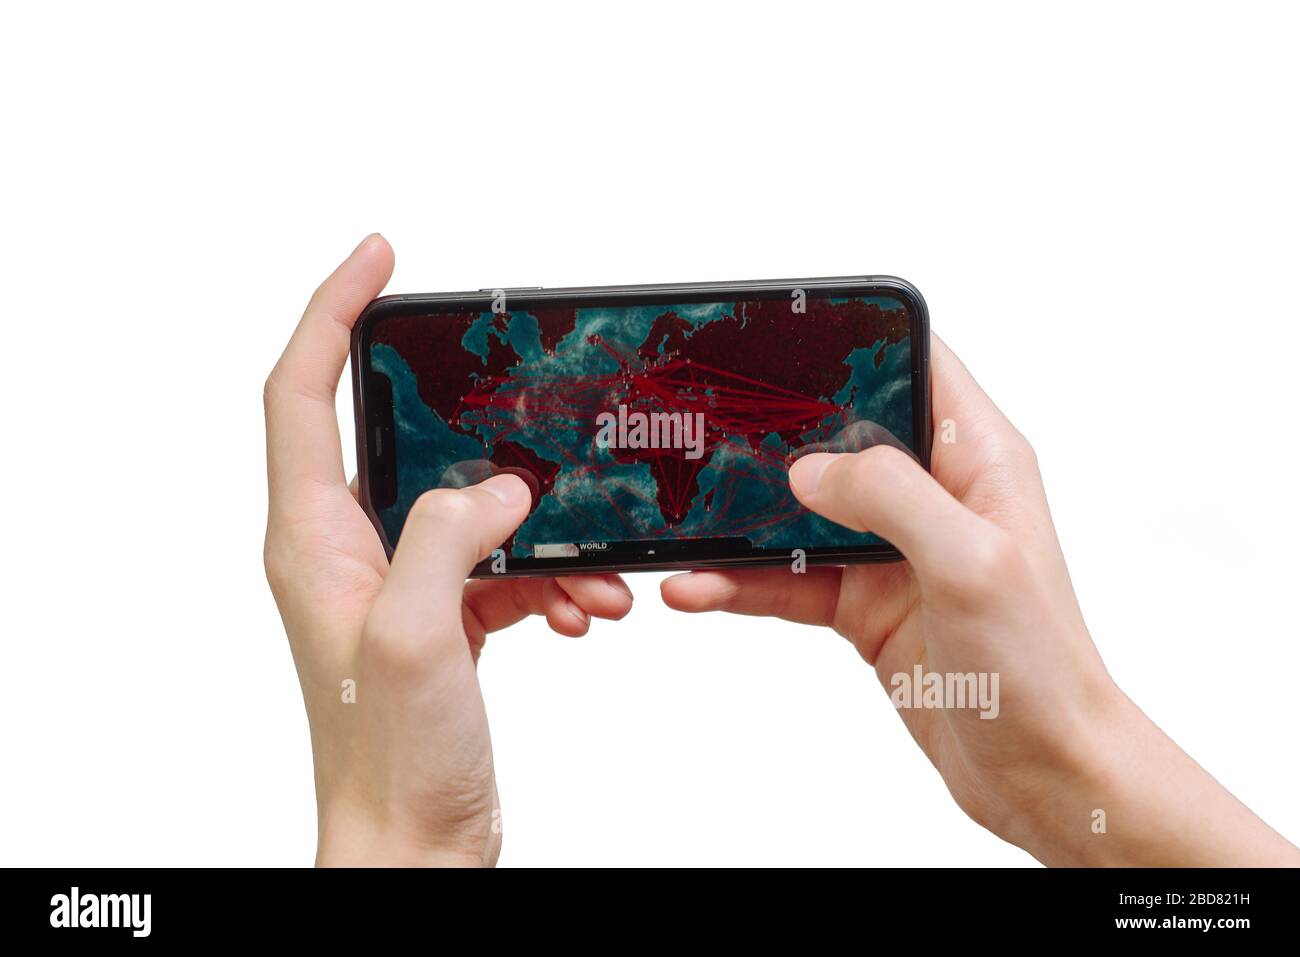 Samara Russie - 04.05.2020: Mains tenant un smartphone iPhone 11 avec Plague Inc: Jeu évolué sur écran d'affichage, éditorial illustratif. Banque D'Images